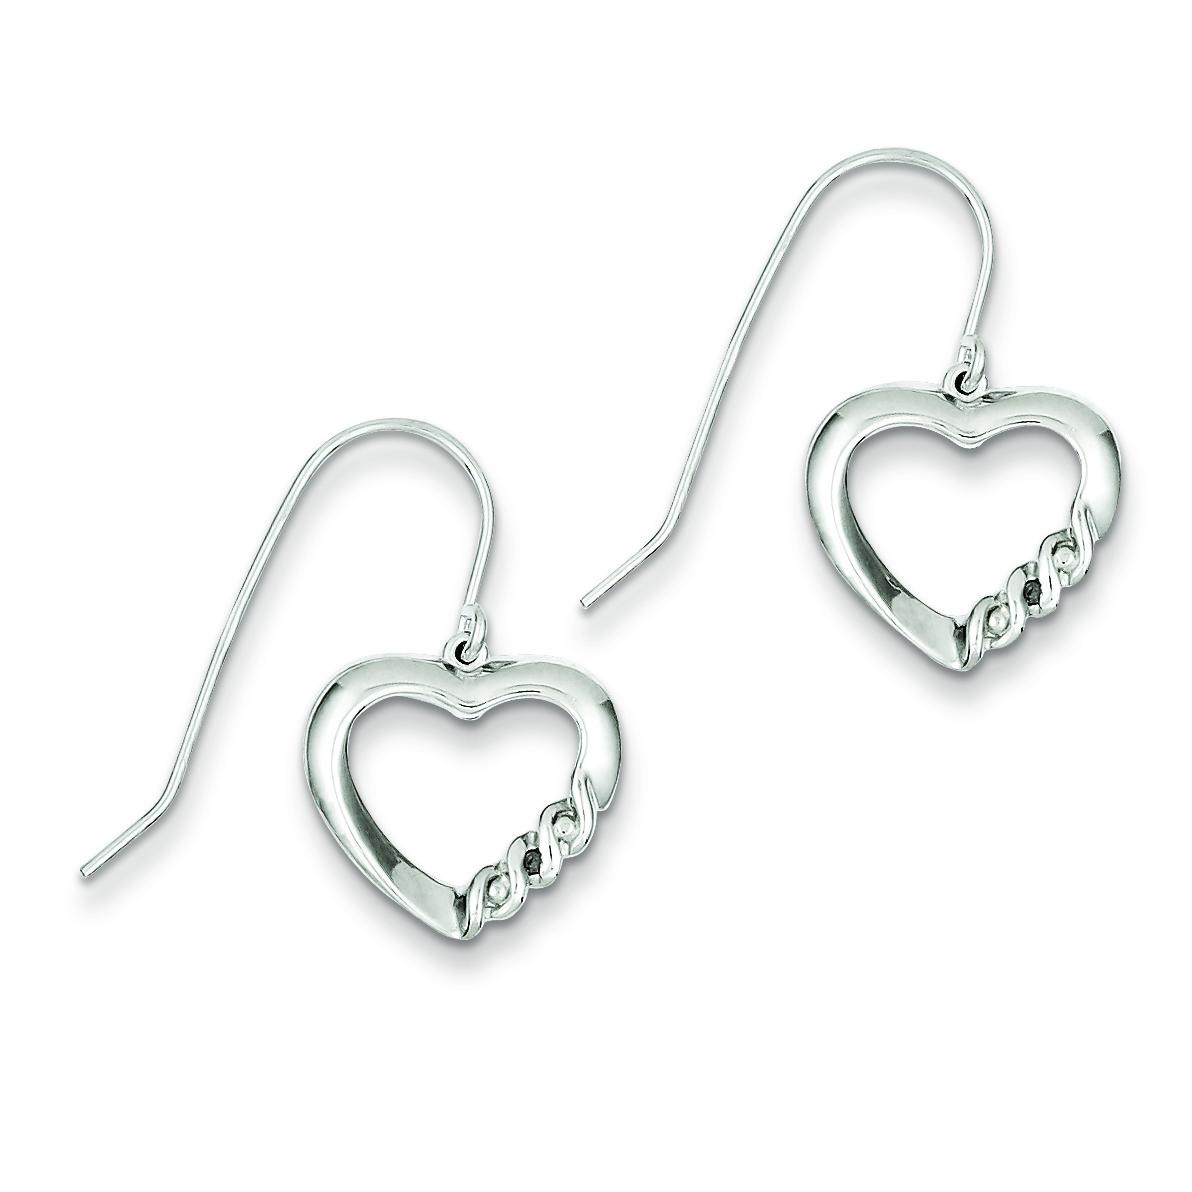 Heart Diamond Earrings in Sterling Silver (0.01 Ct. tw.) (0.01 Ct. tw.)